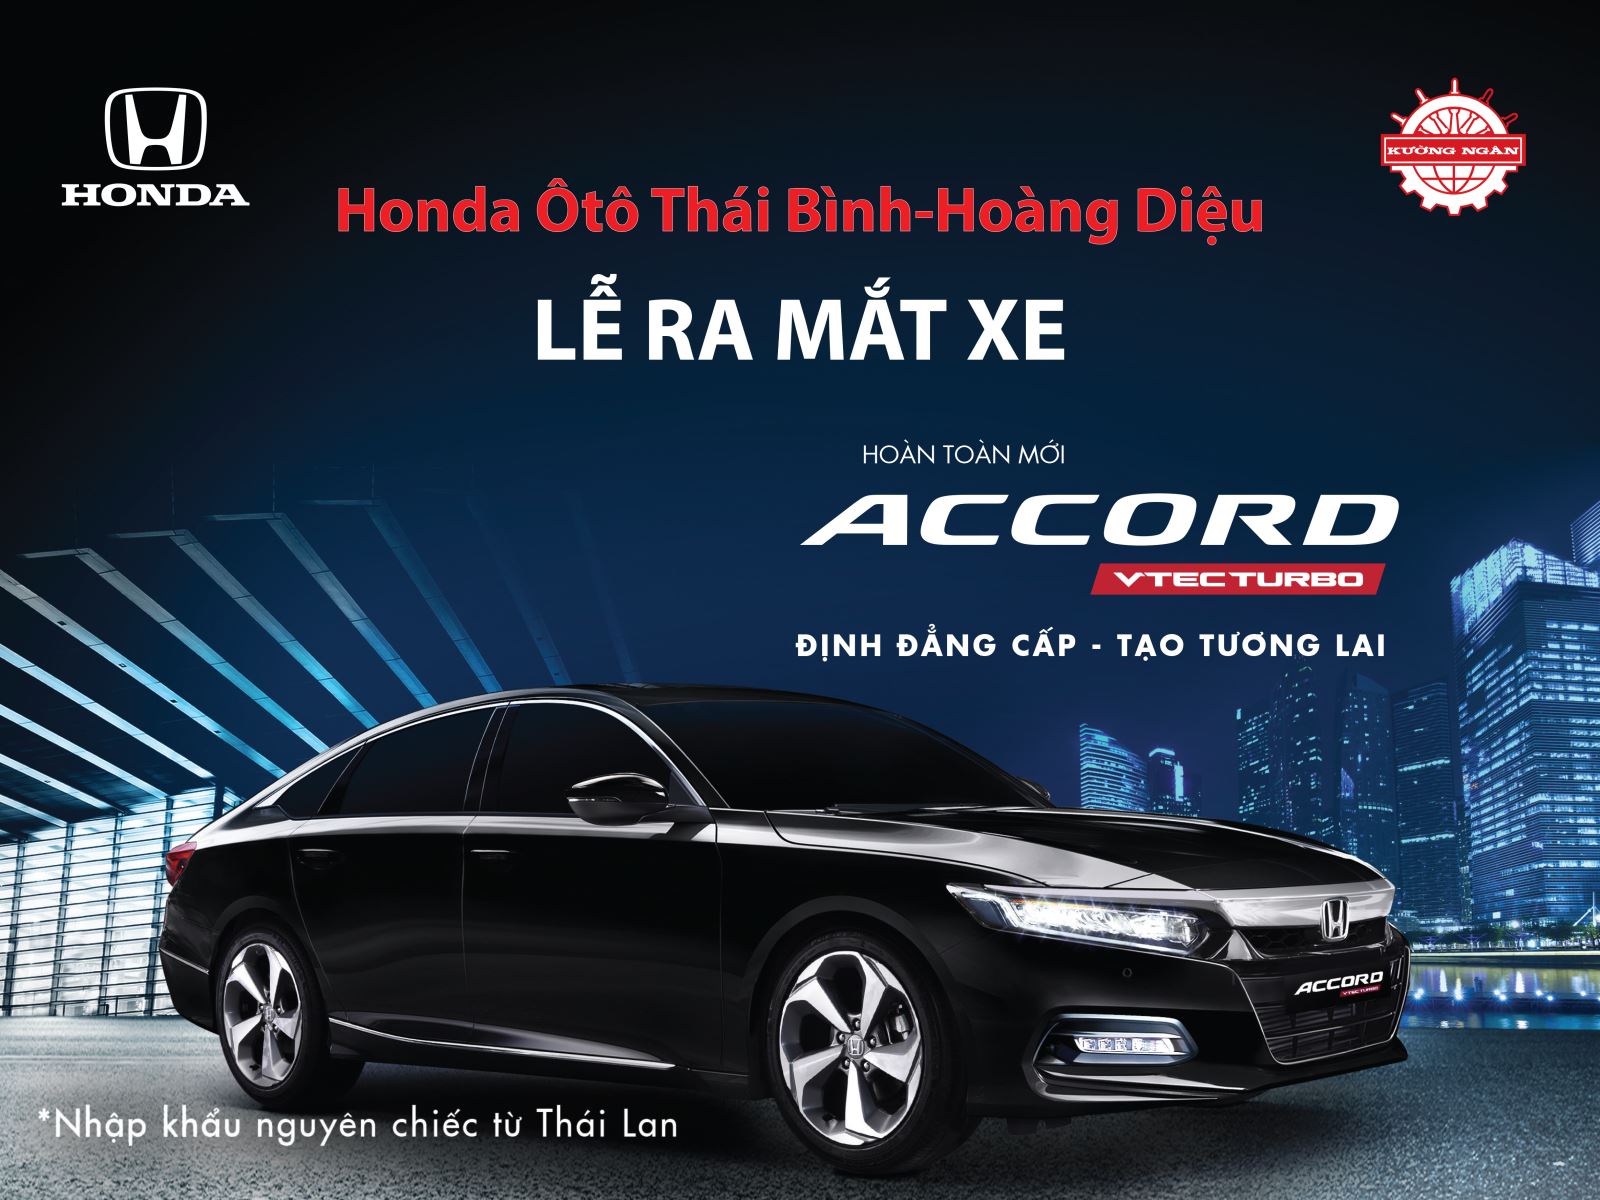 Lễ ra mắt Honda Accord 2019 Hoàn toàn mới tại Honda Ôtô Thái Bình - Hoàng Diệu